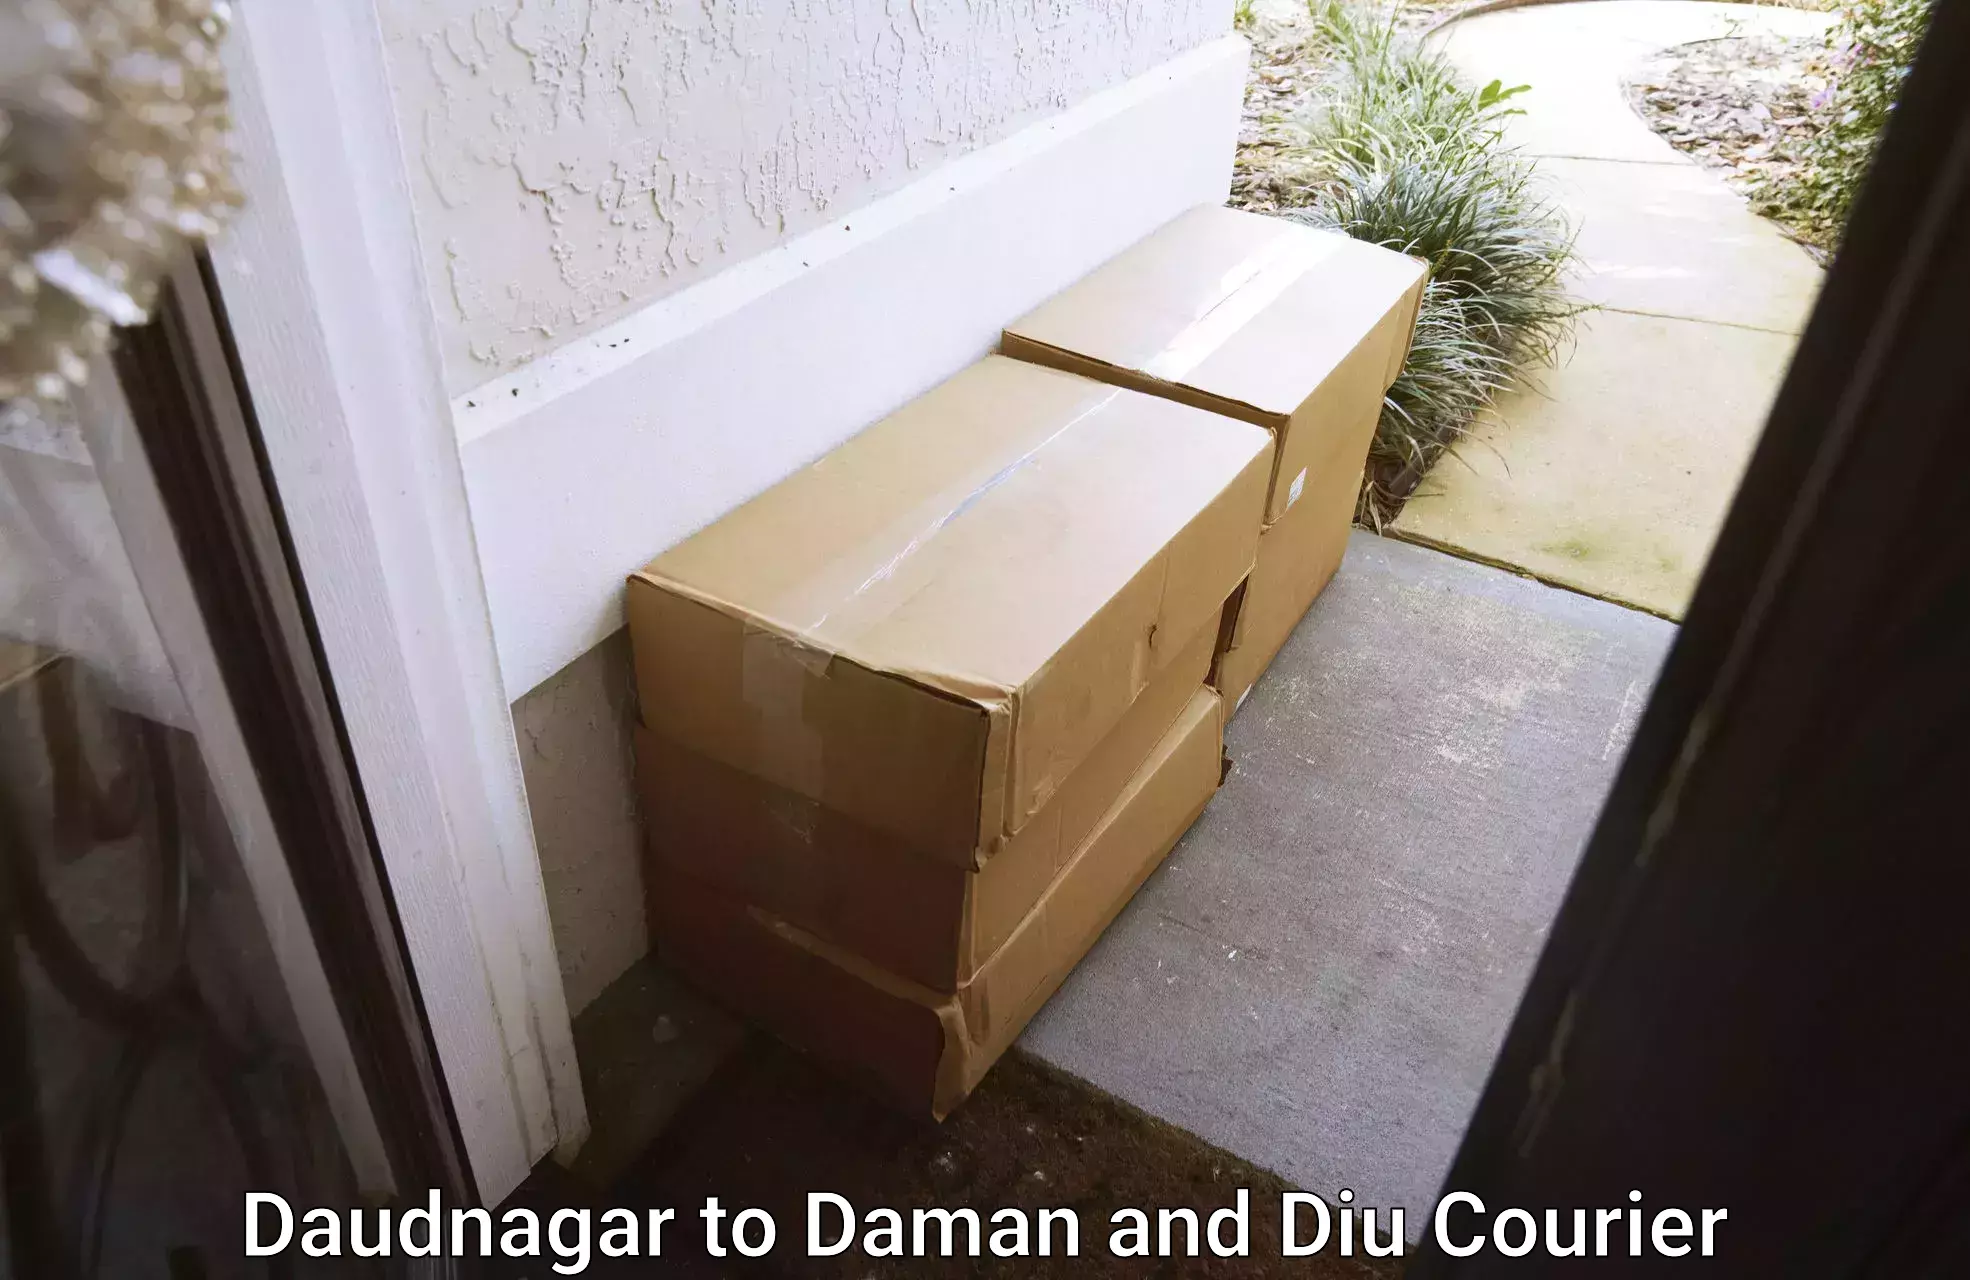 Home moving experts Daudnagar to Daman and Diu